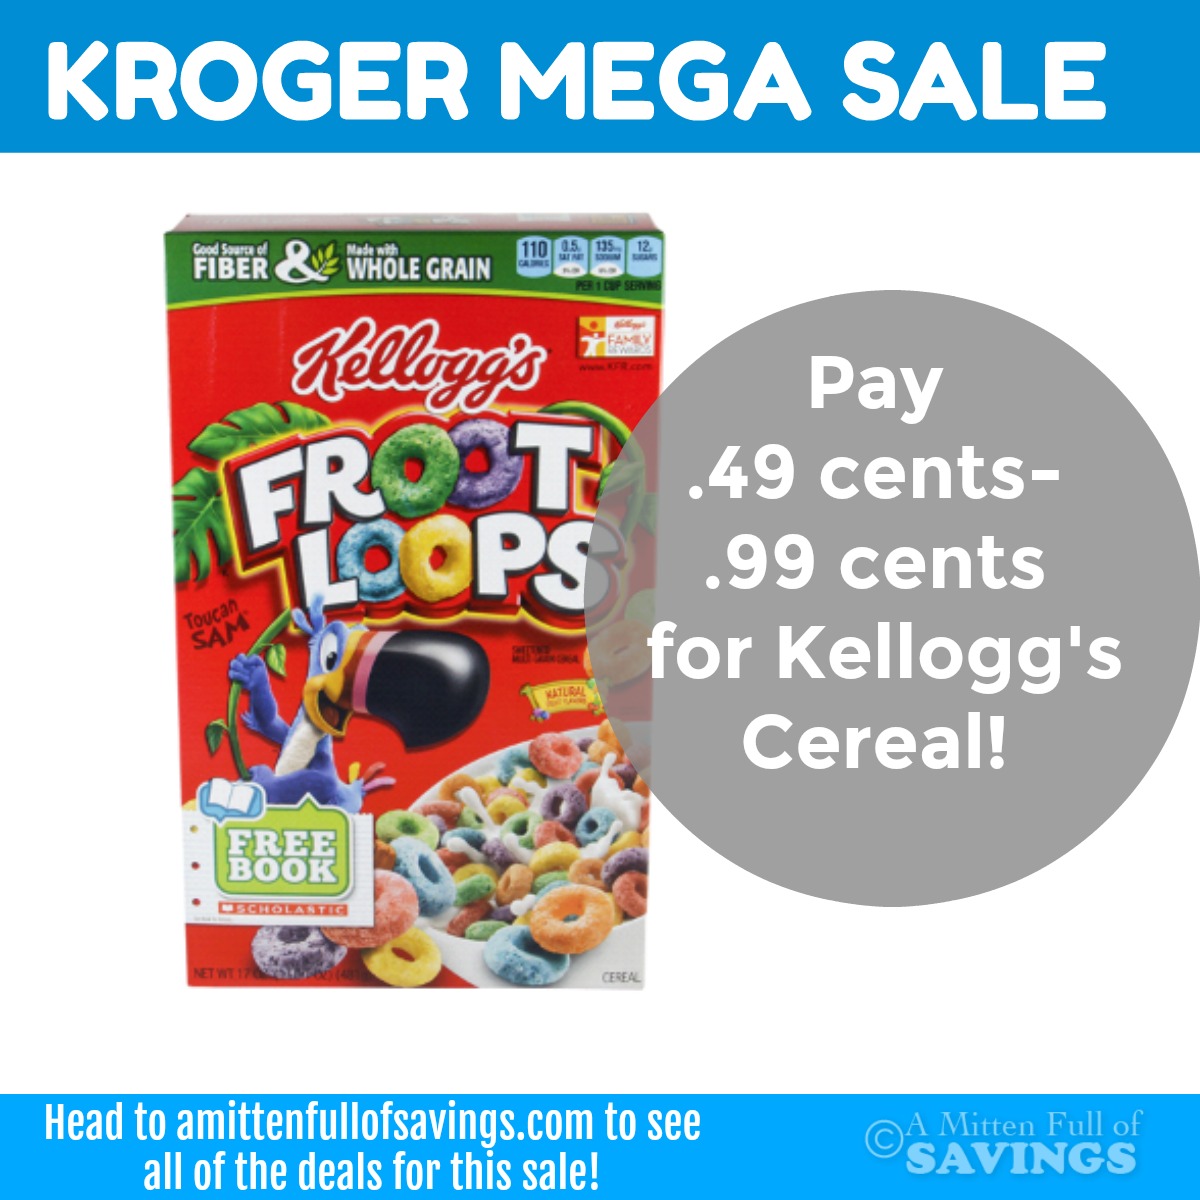 Kellogg's Cereal deal with Kroger MEGA sale